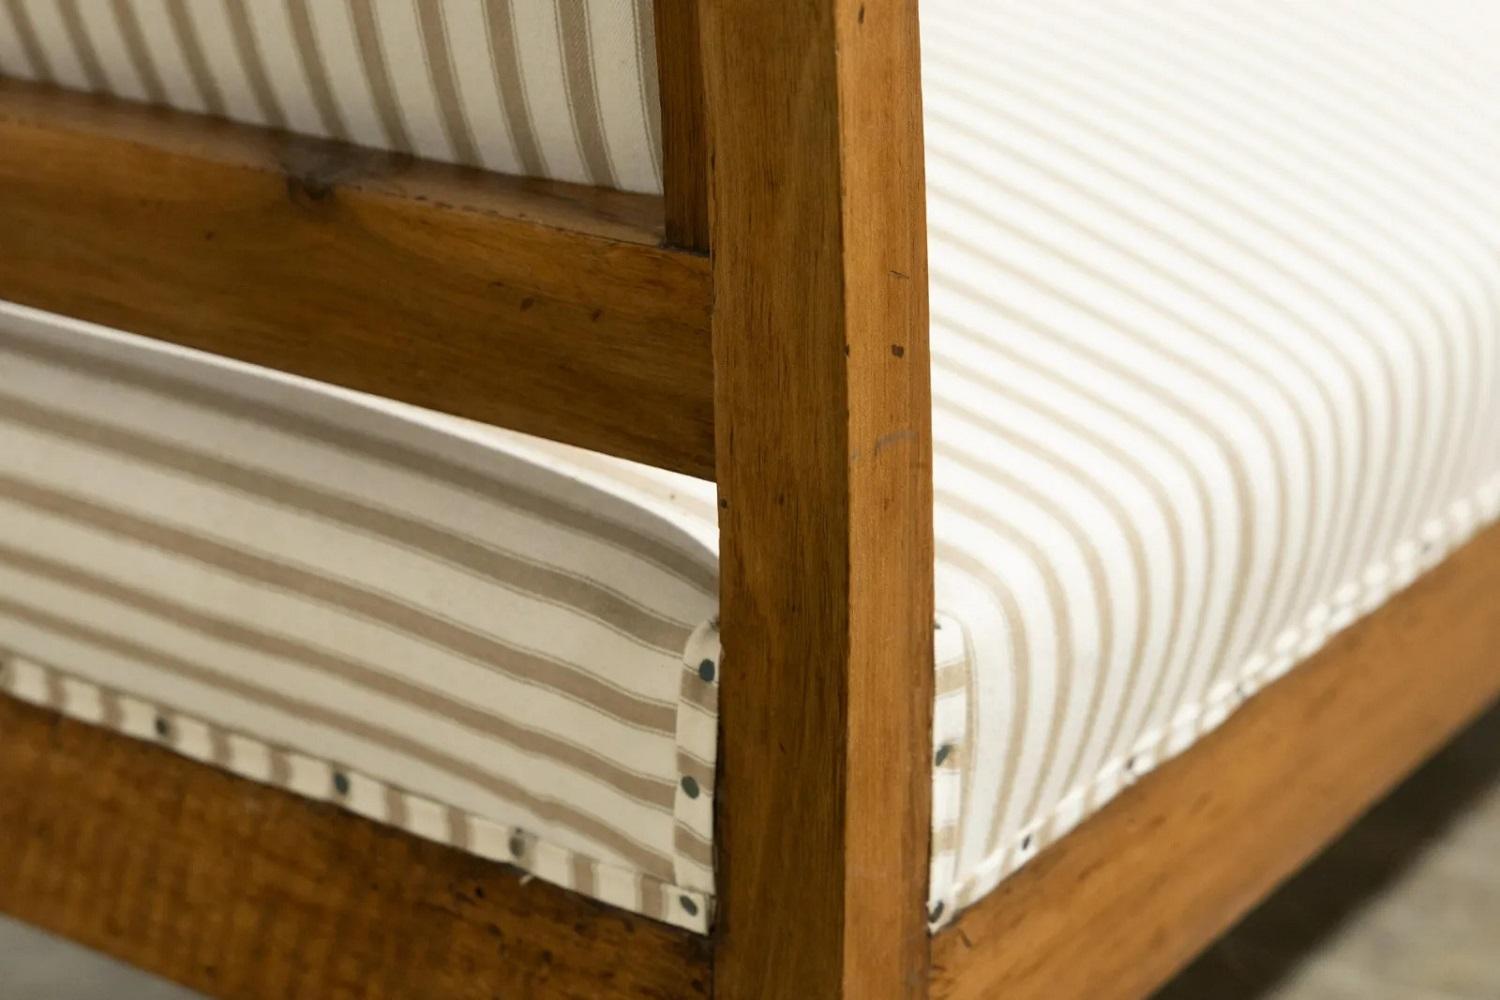 Lit de jour / banc du 19e siècle. Le lit de jour est doté d'un cadre en bois massif et d'un tissu à rayures.